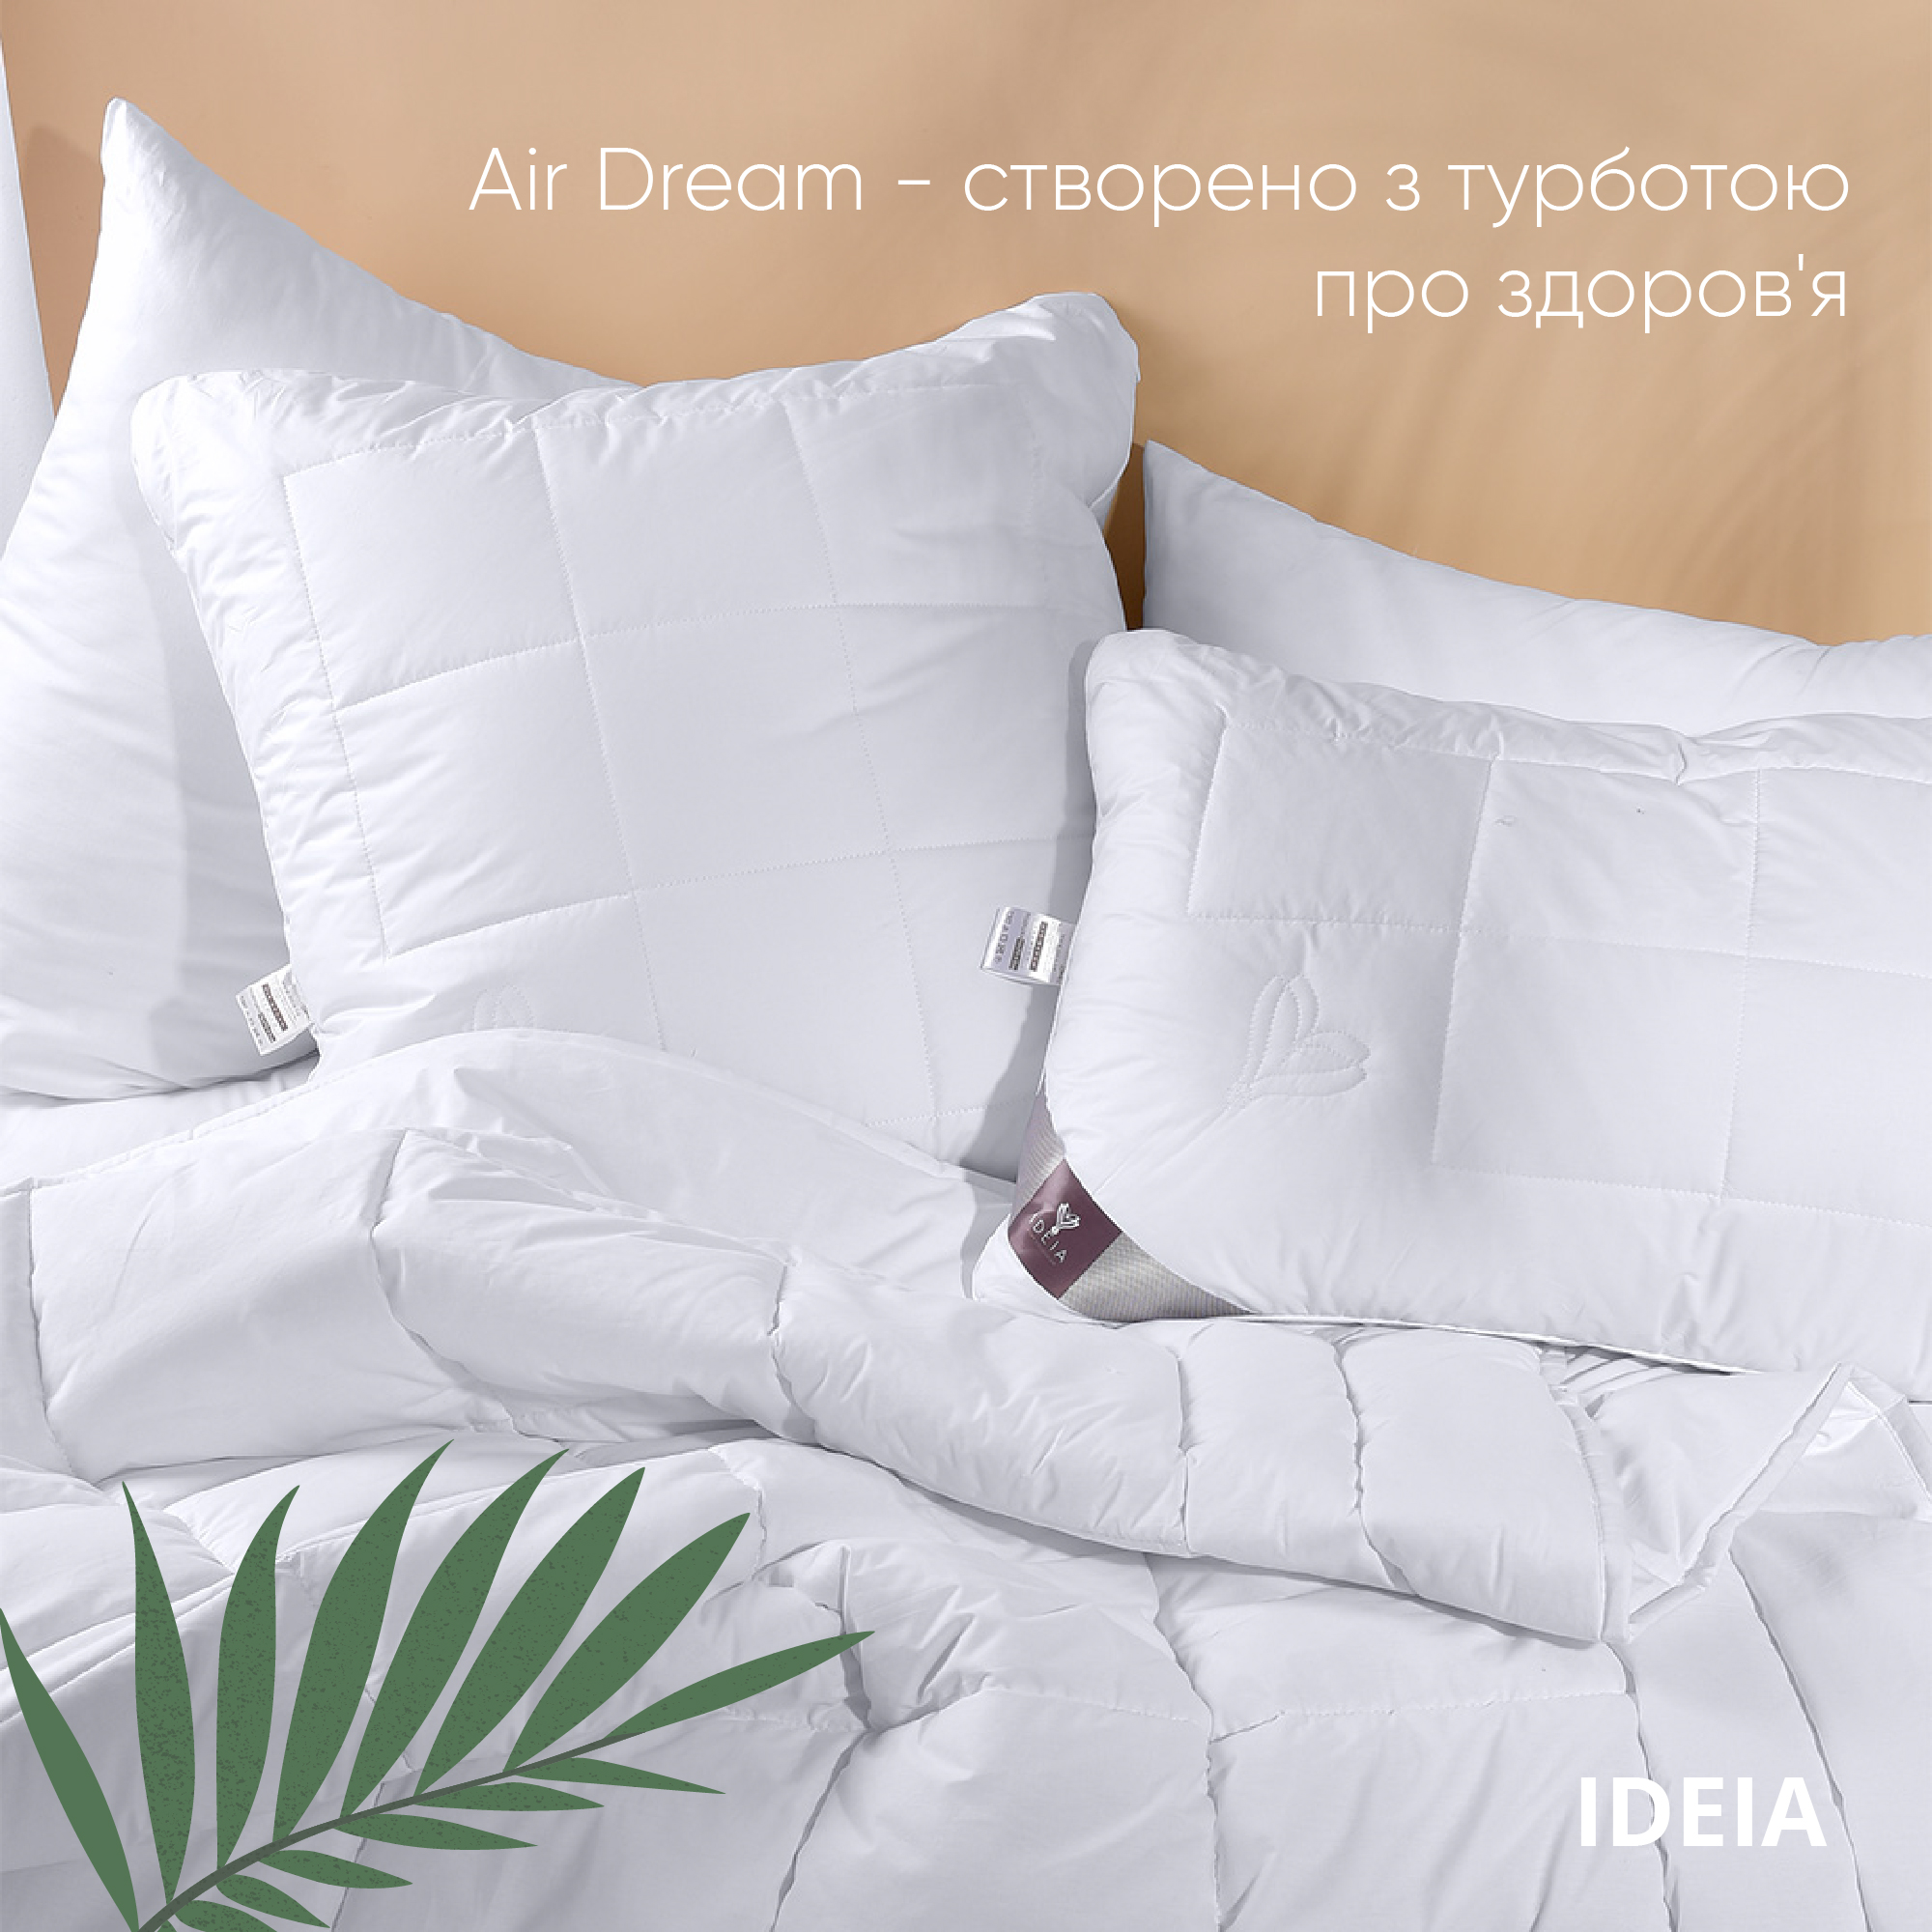 Одеяло Ideia Air Dream Premium зимнее, 210х140, белый (8-11694) - фото 6